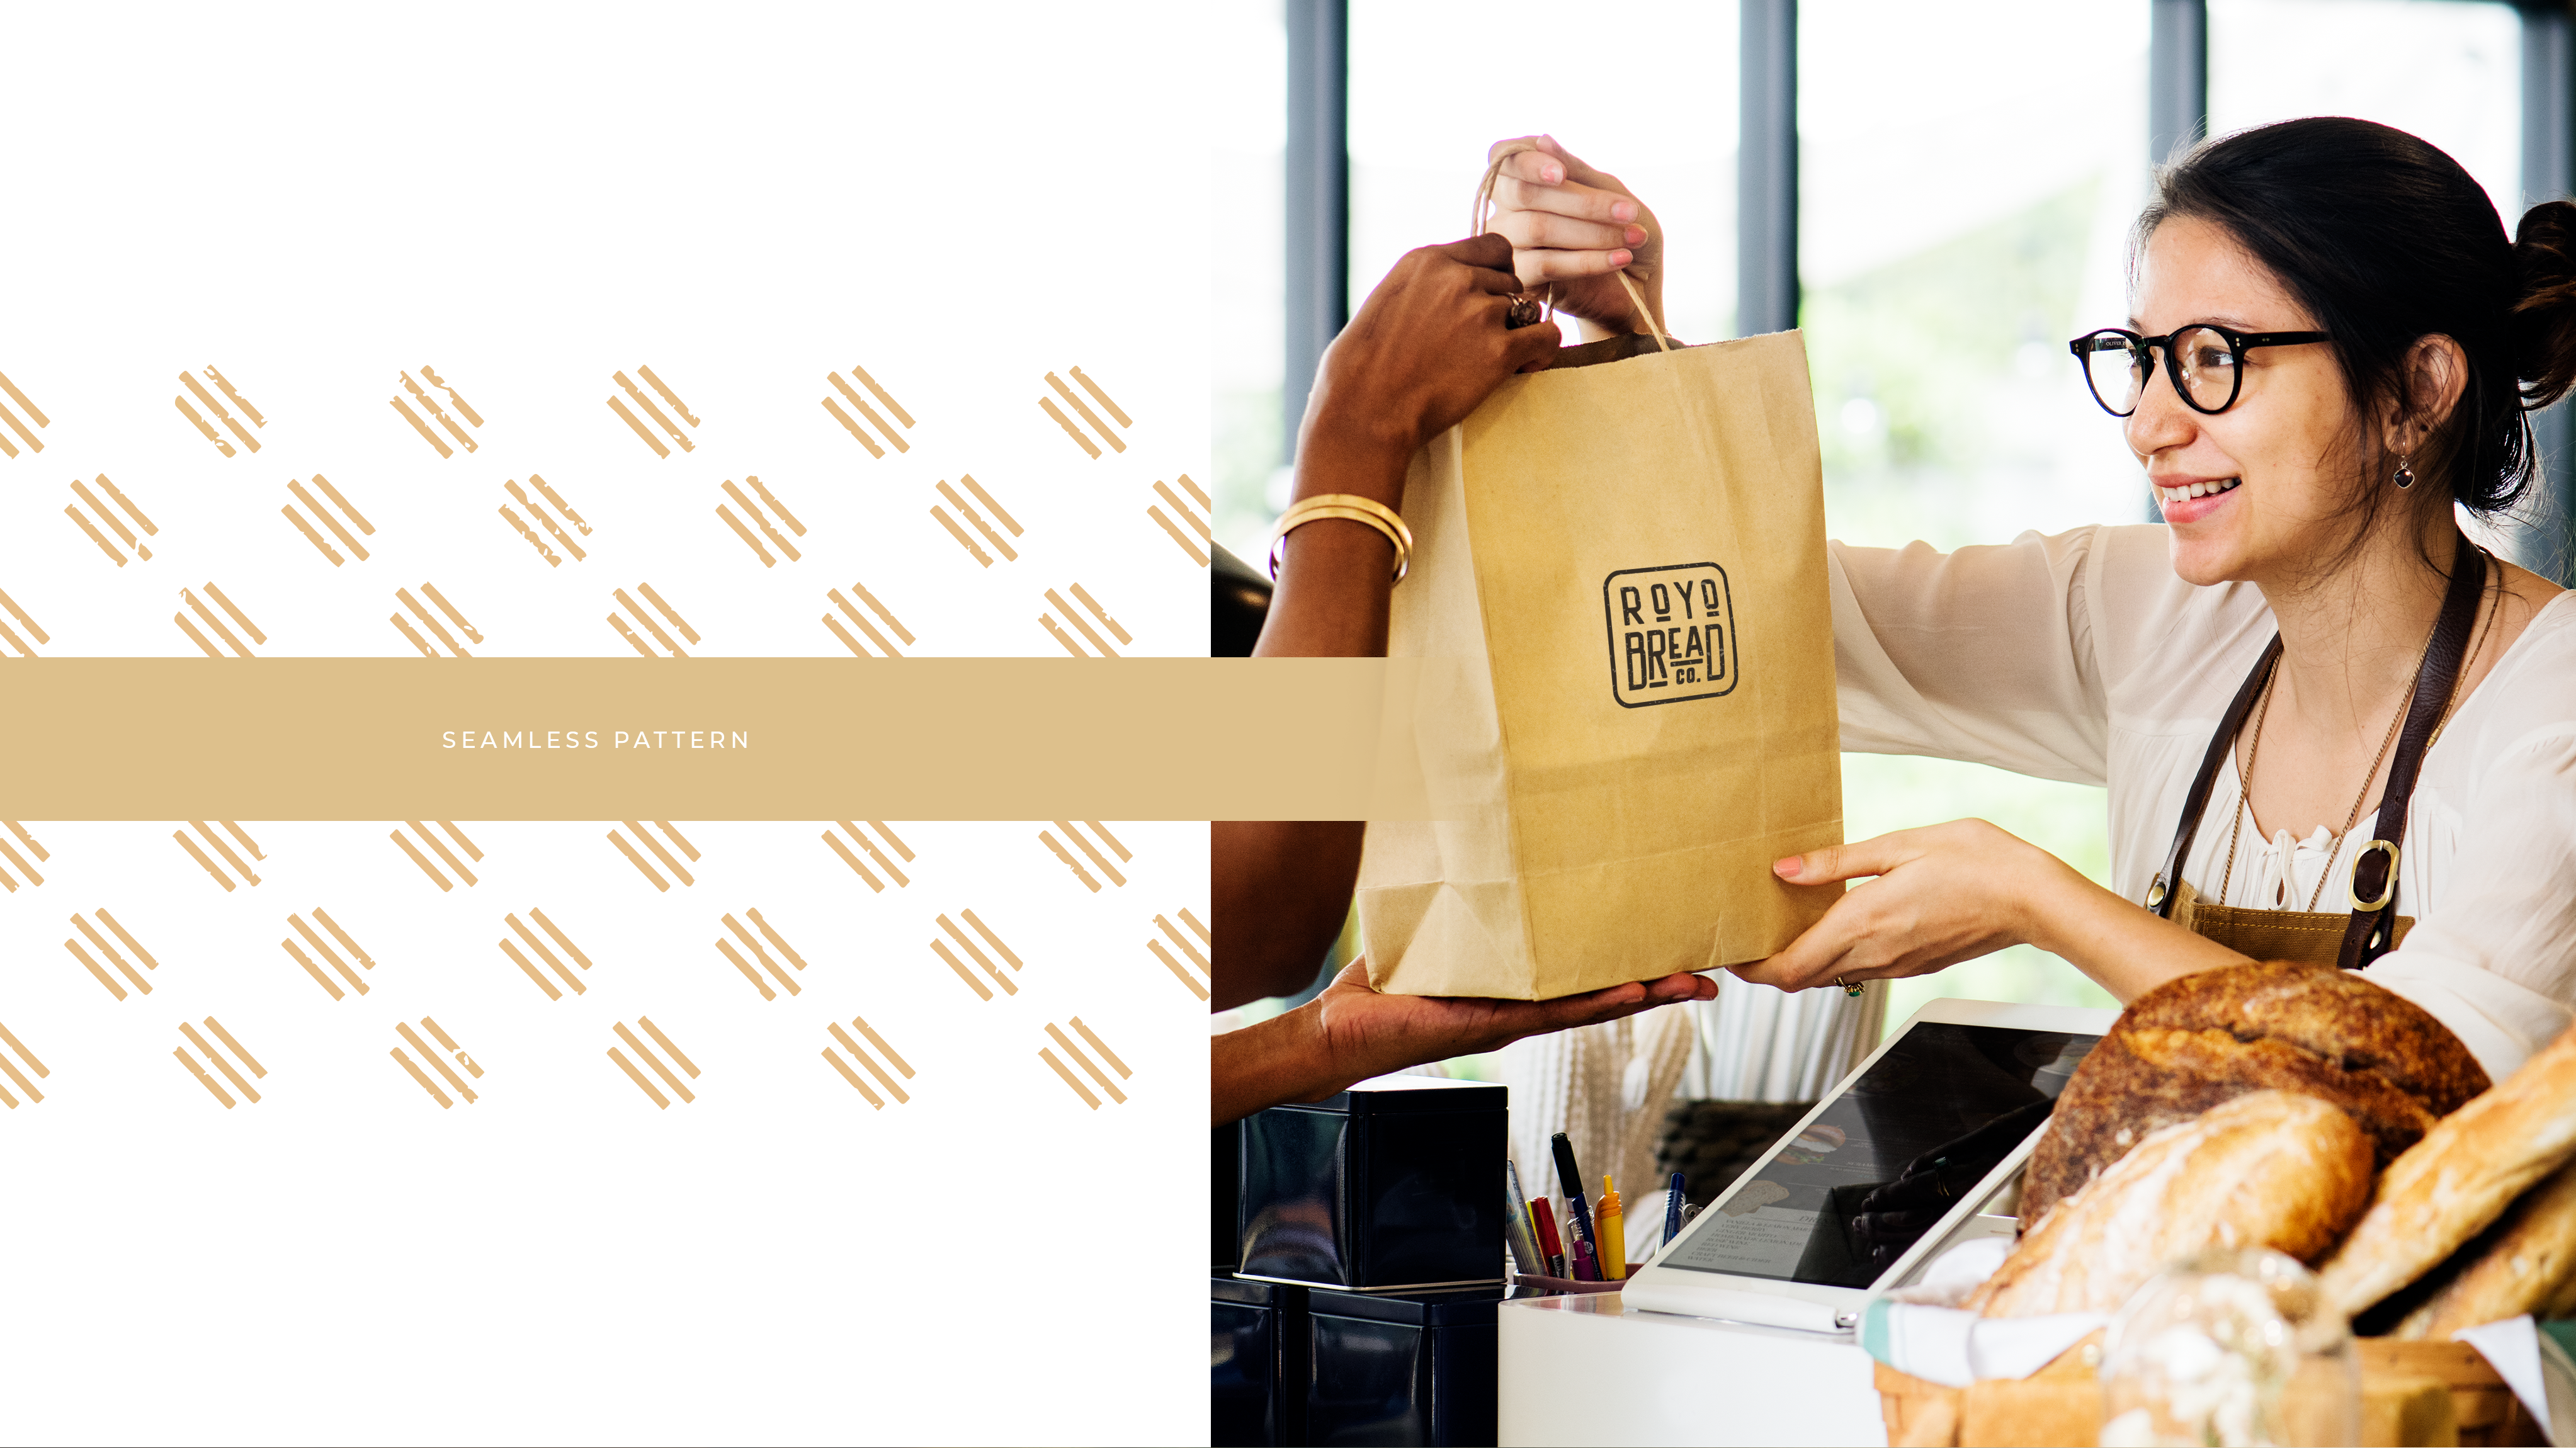 RoYo Bread | Order #1 Custom Branding 2021 | Branding Agency Branding